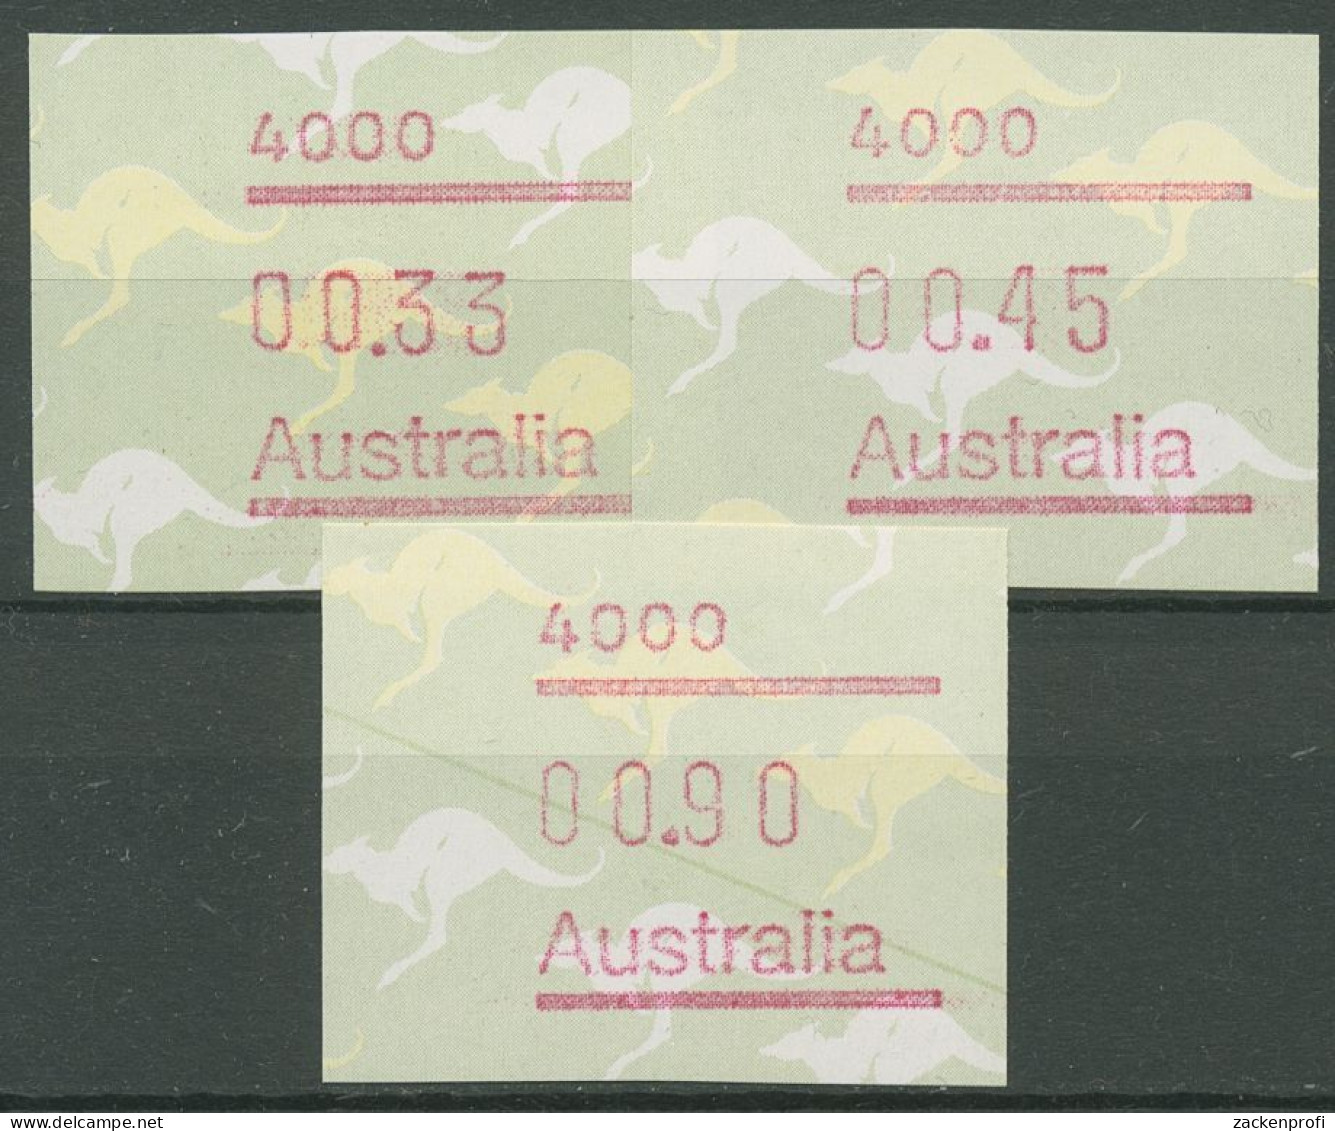 Australien 1985 Känguruh Tastensatz Automatenmarke 4 S1, 4000 Postfrisch - Vignette [ATM]